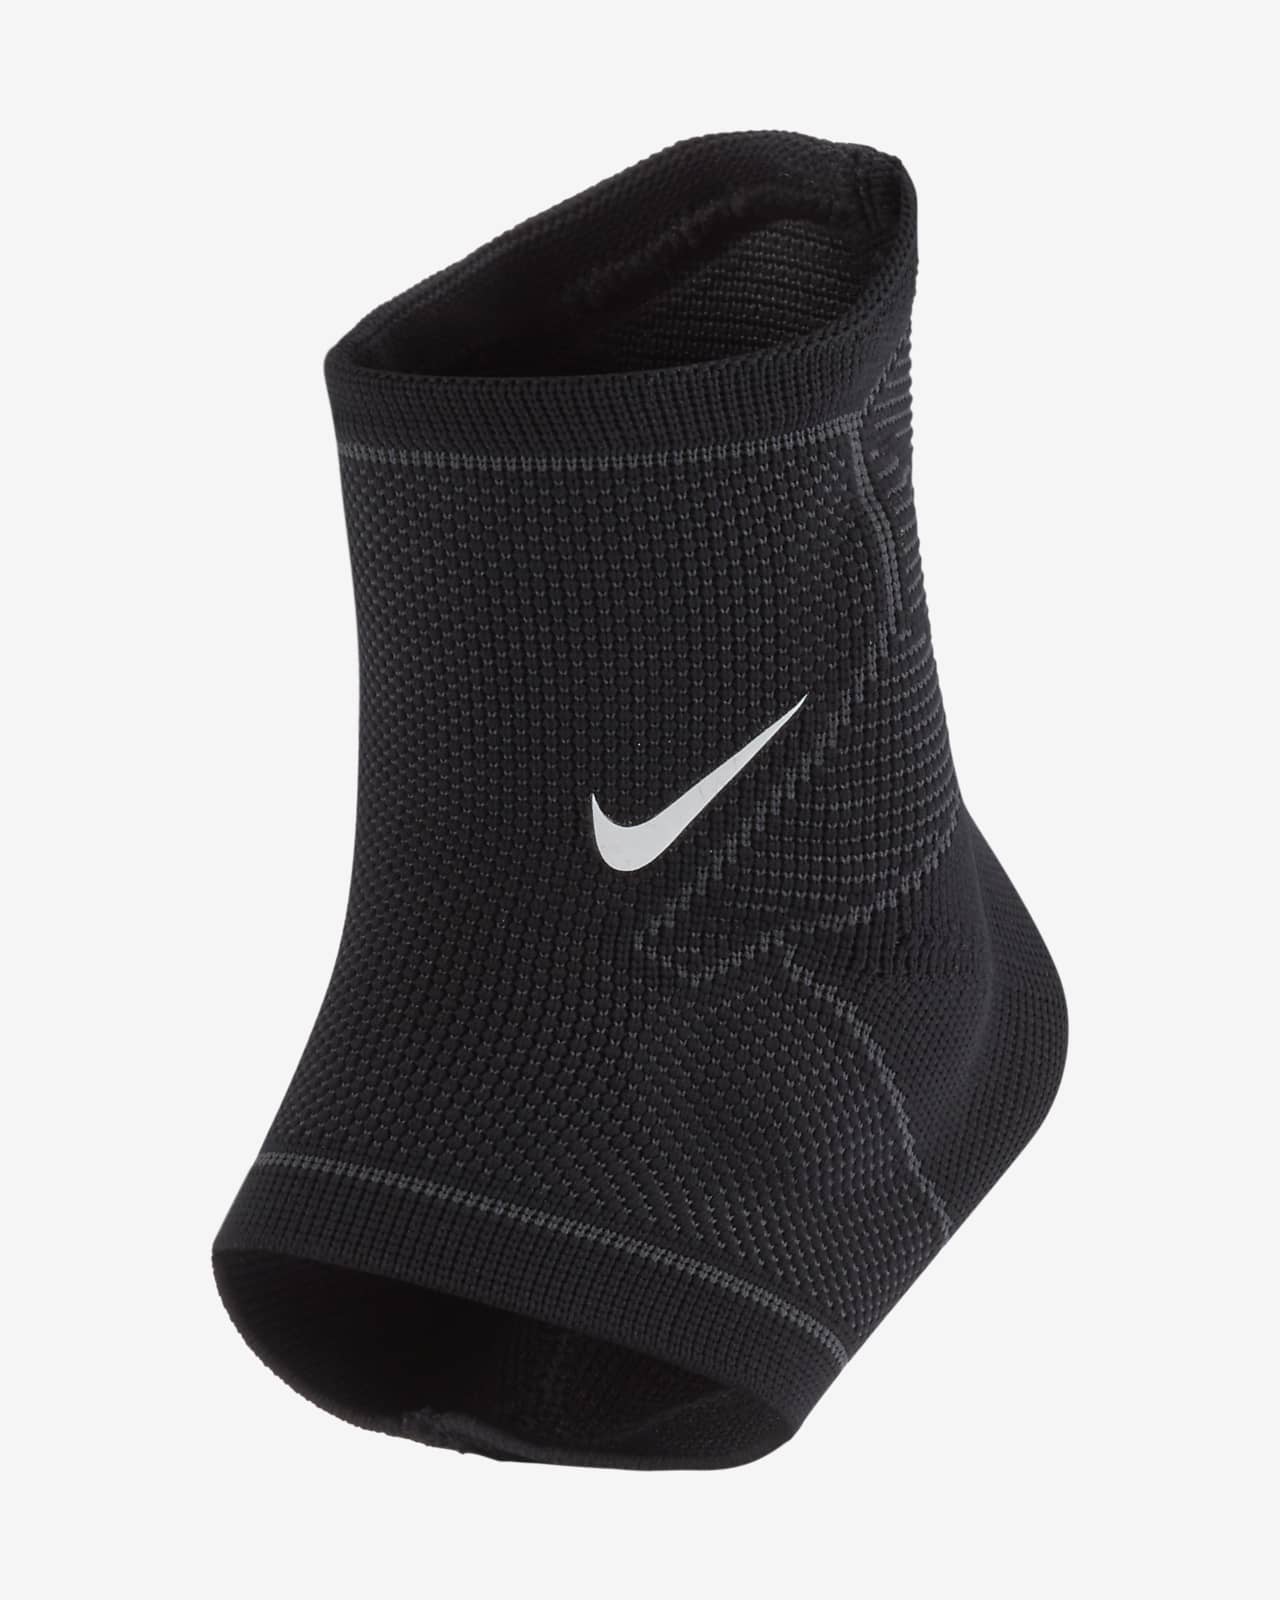 Nike Pro Open Knee Strap Sleeve